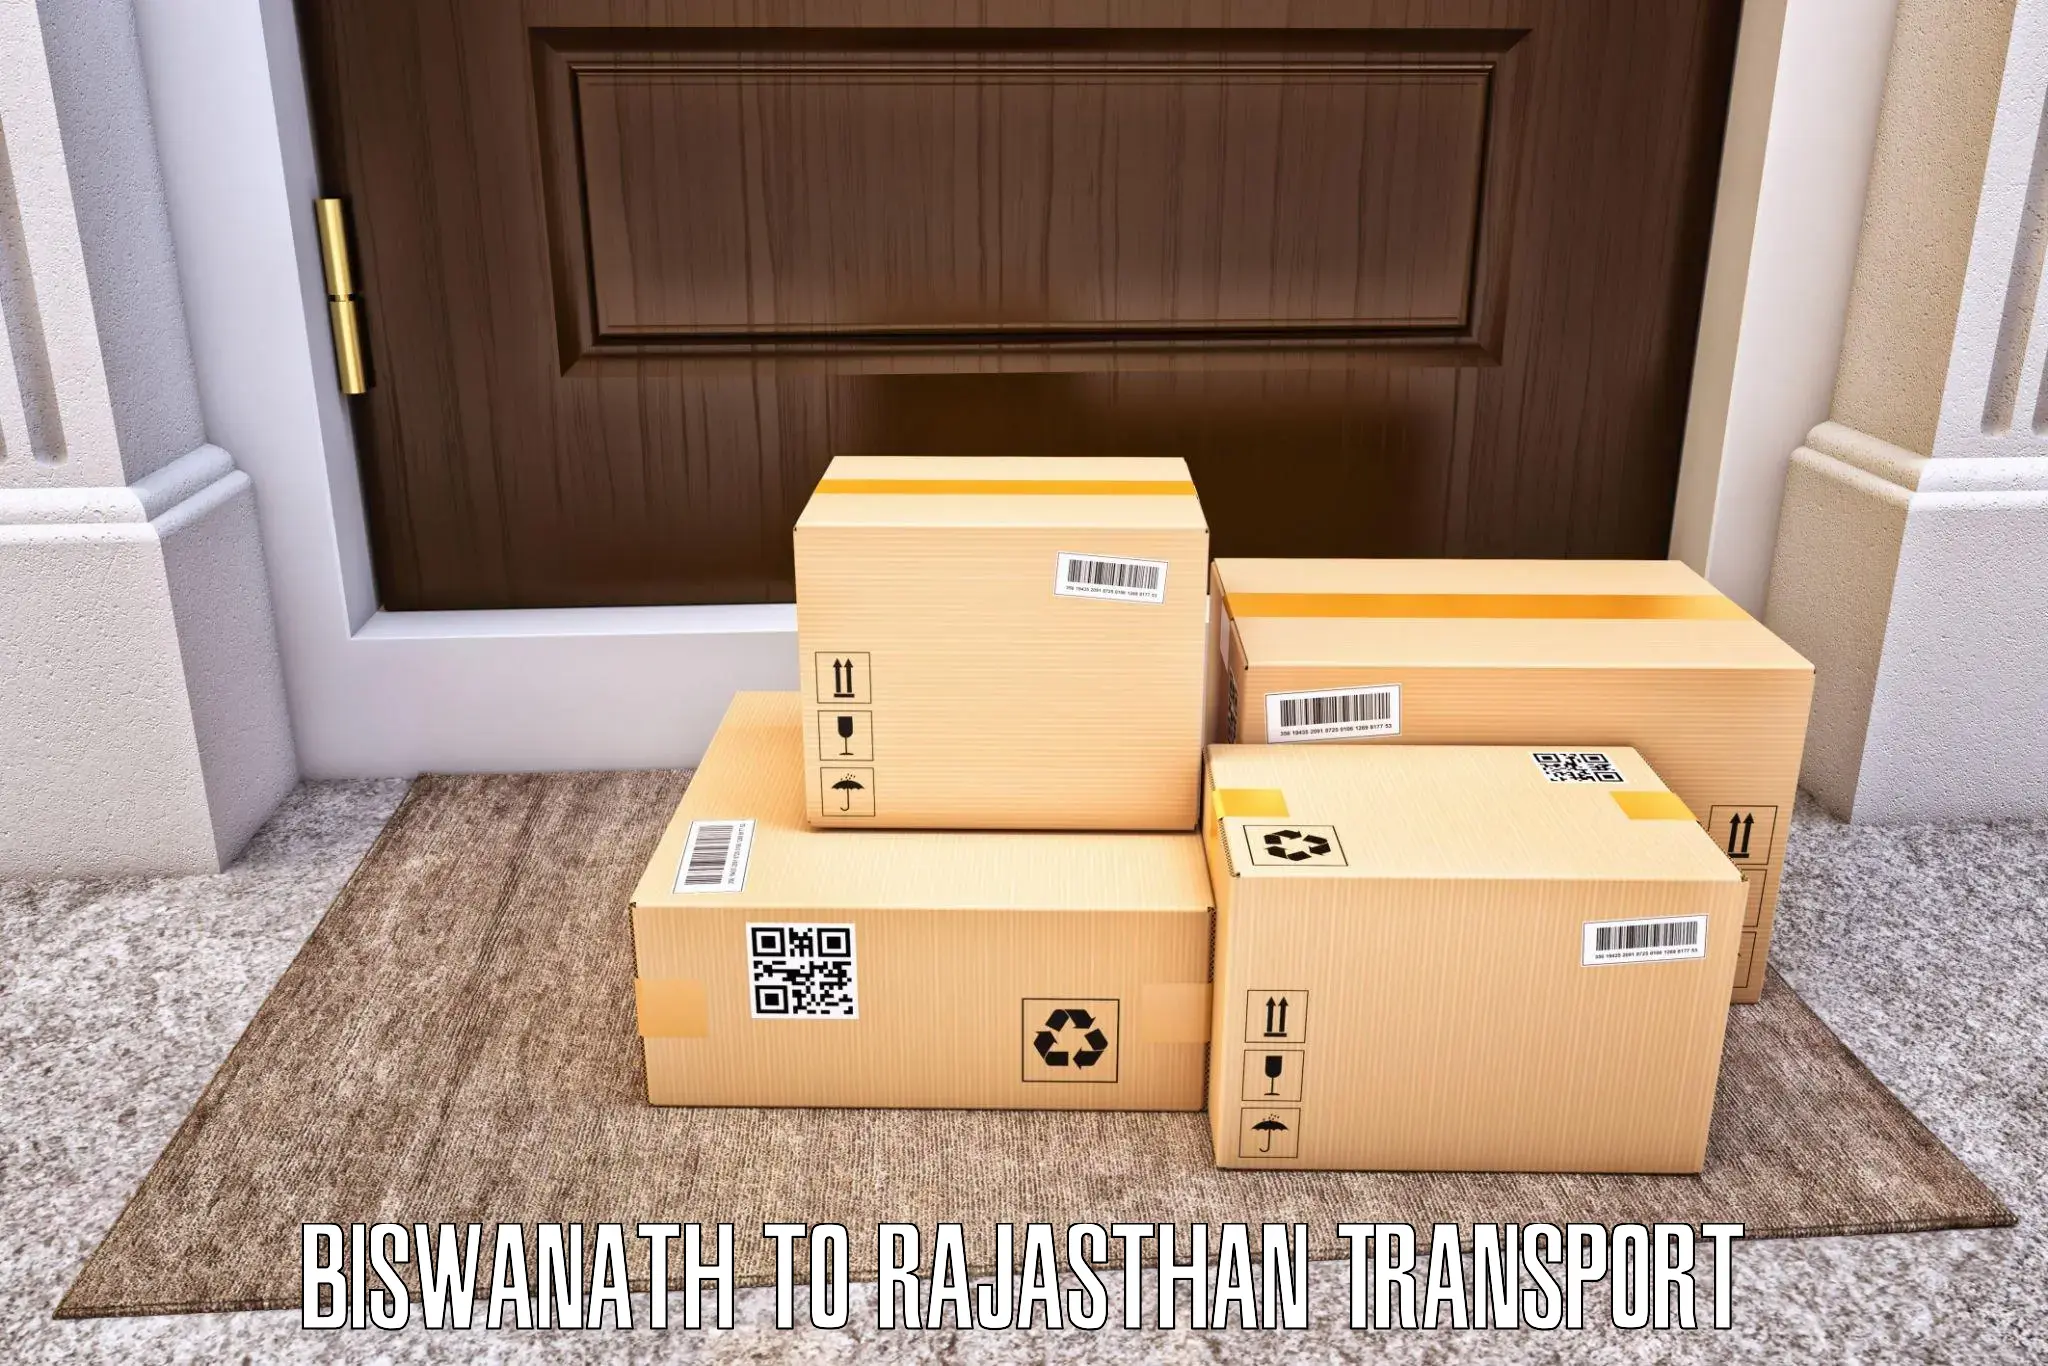 Online transport service Biswanath to Achrol